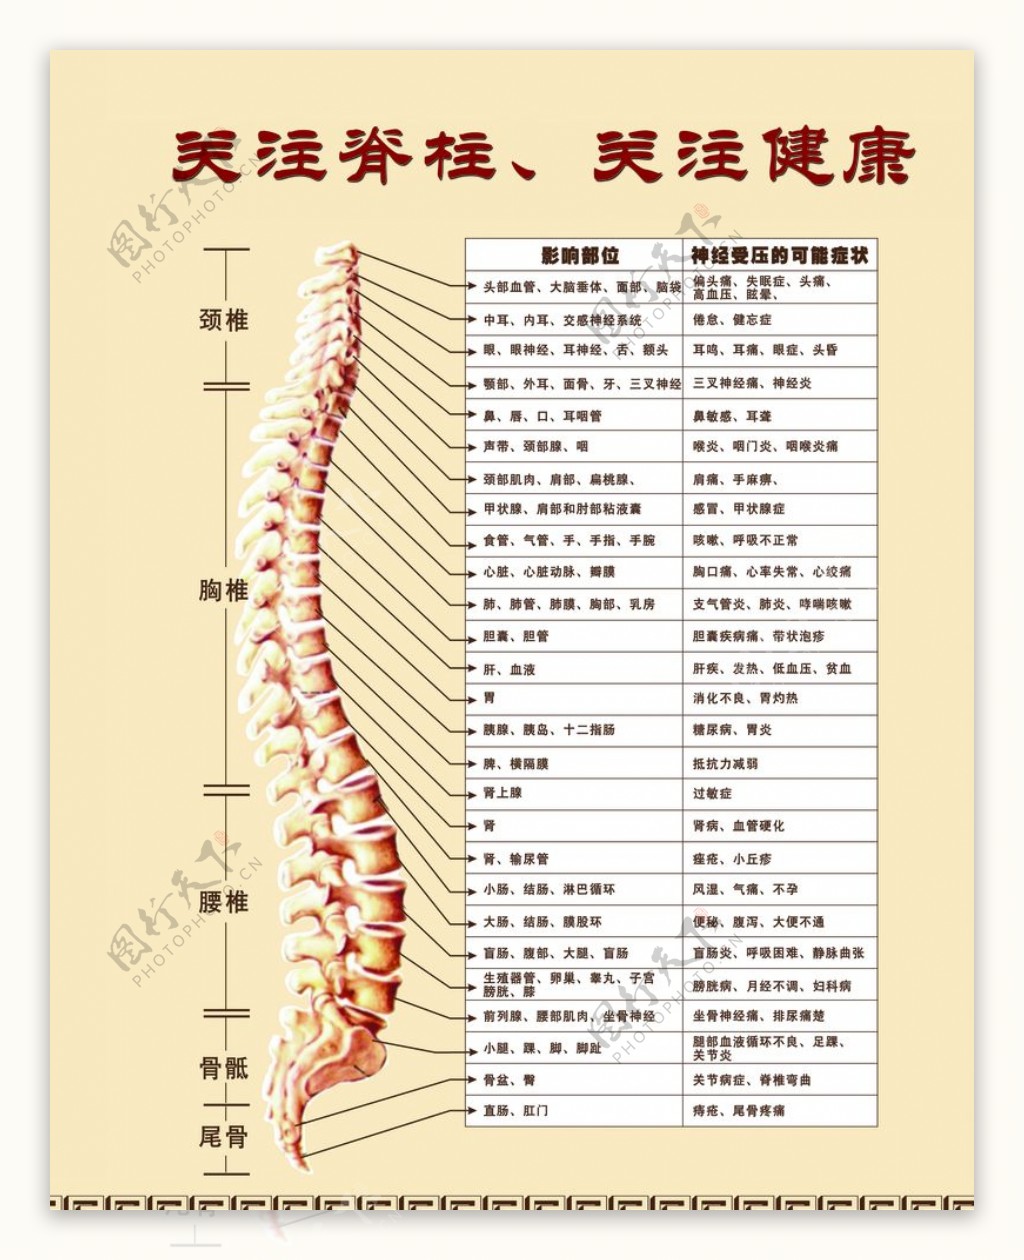 图54 椎骨间的连结-人体解剖组织学-医学